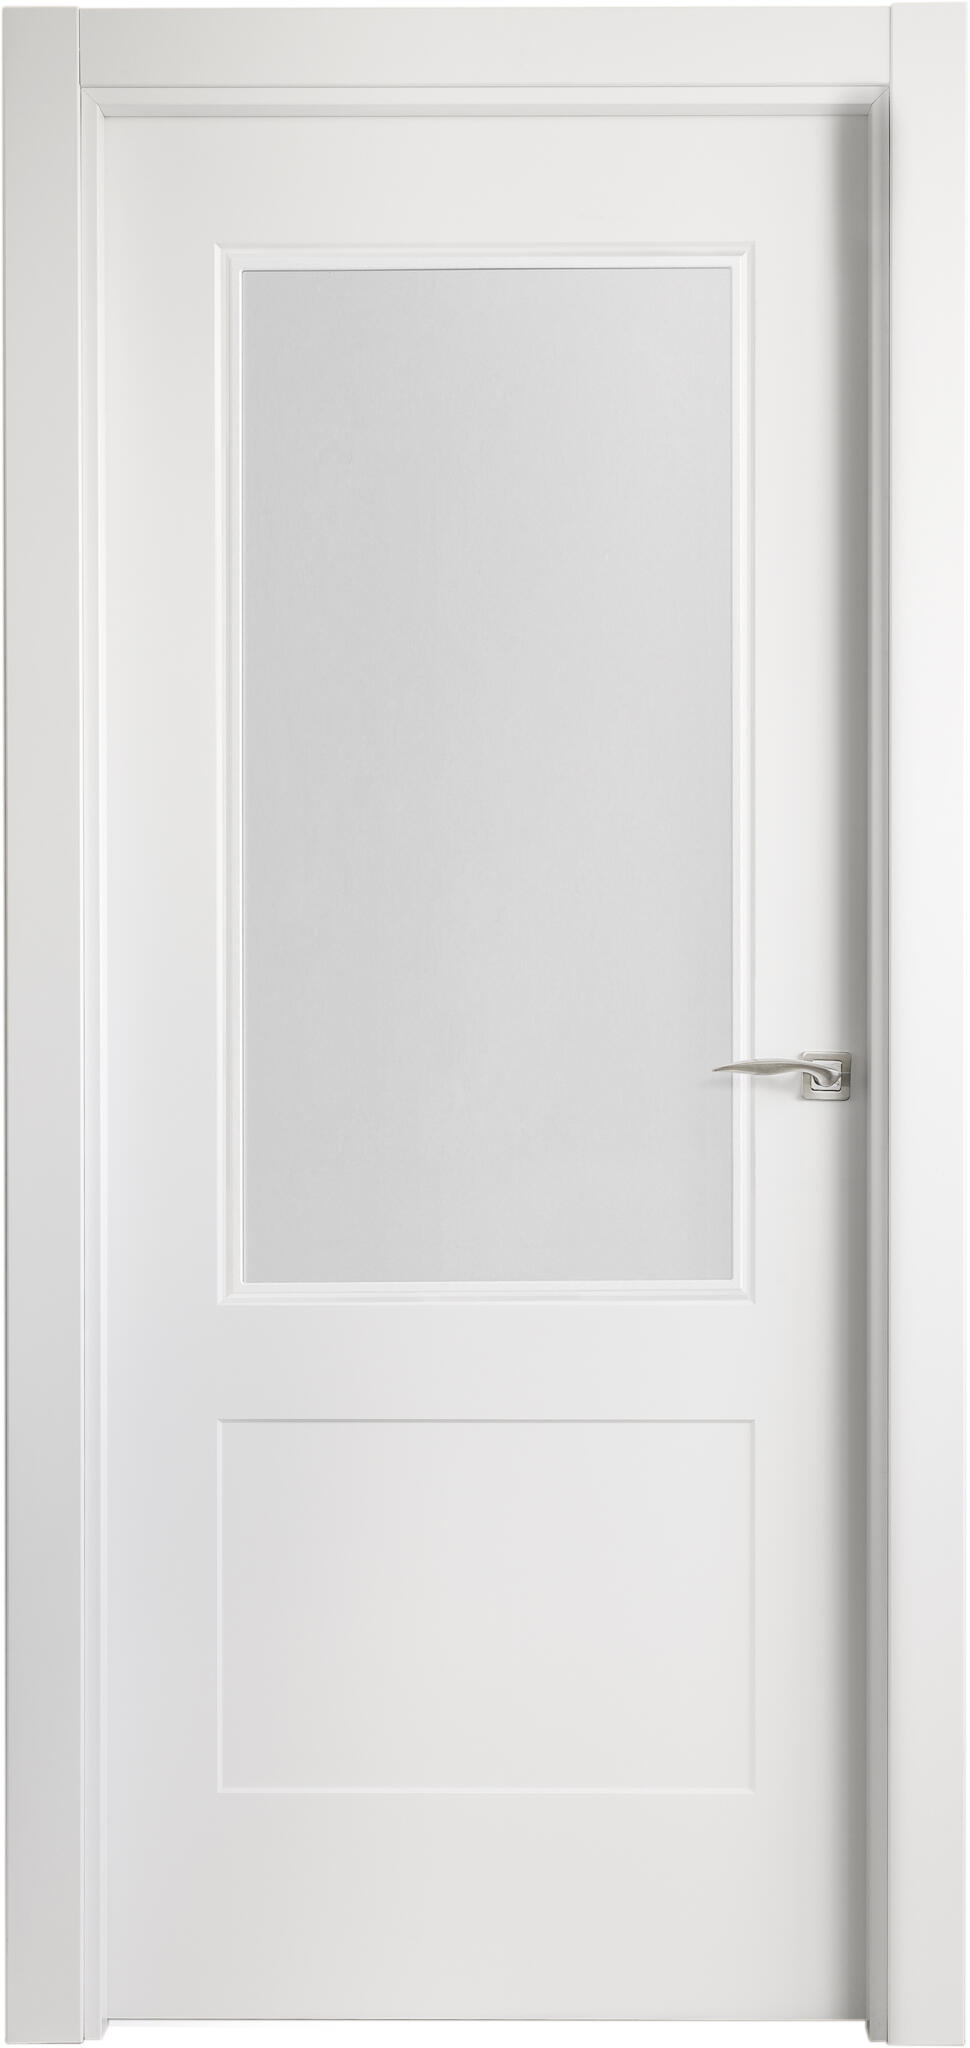 Puerta atlanta plus blanco apertura izquierda con cristal de 9x82,5cm